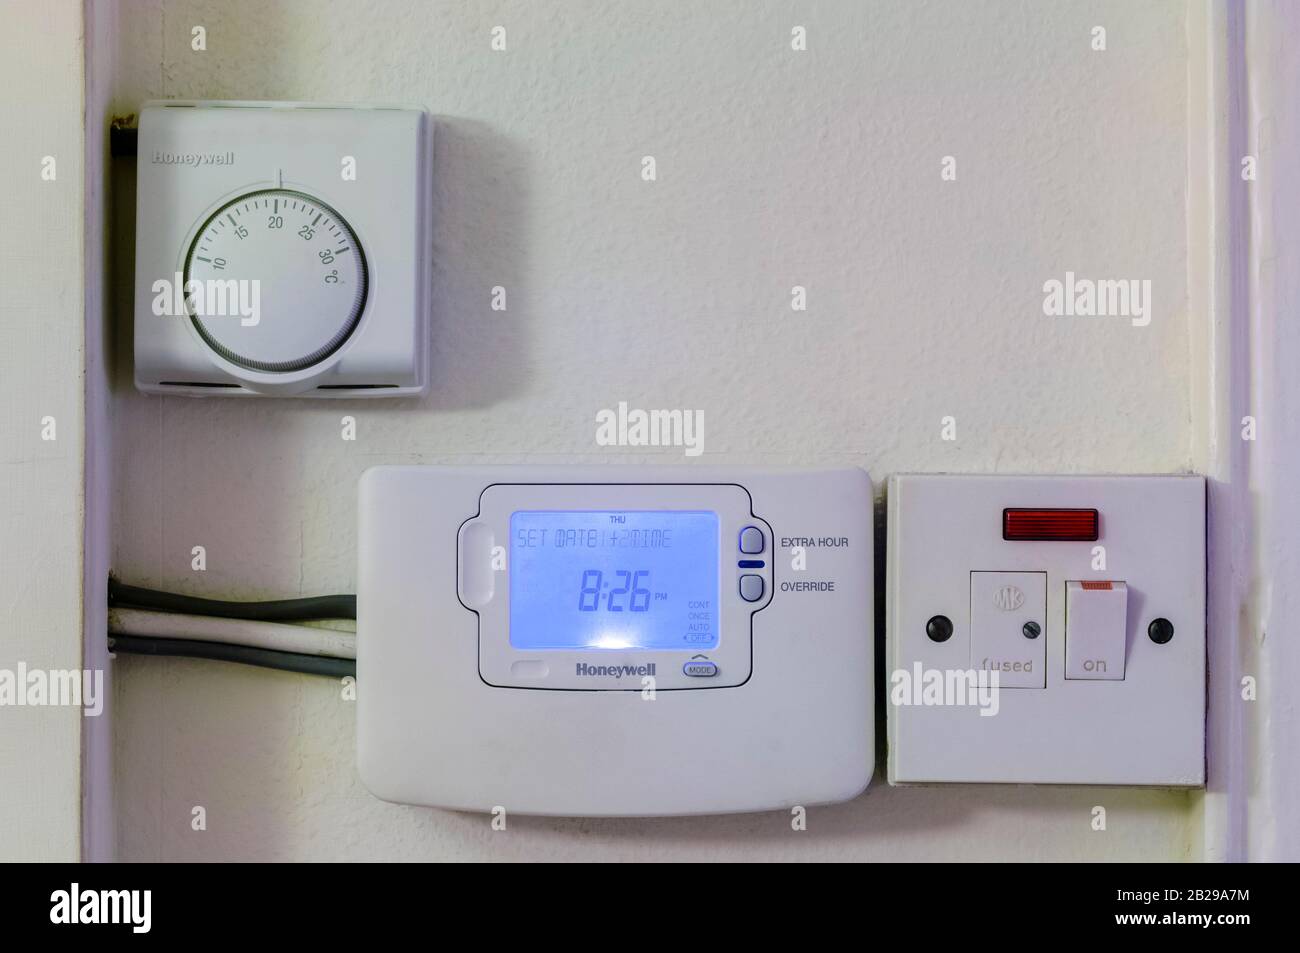 Instalado en una pared, un termostato Honeywell ajustado a veinte grados,  temporizador de calefacción central e interruptor de corte eléctrico  Fotografía de stock - Alamy